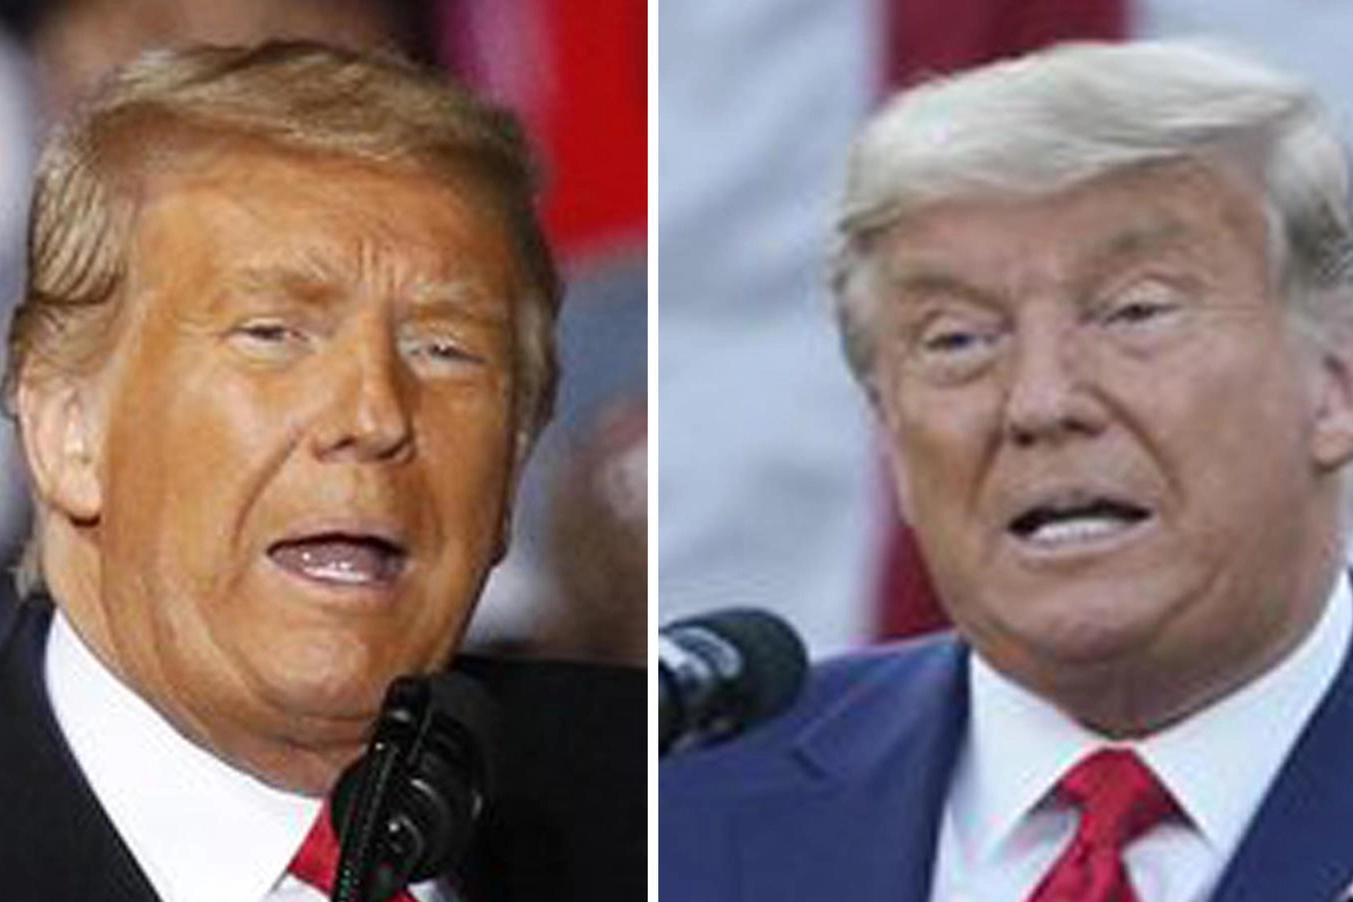 Trump cambia colore dei capelli: da giallo a grigio in un mese (Ansa)